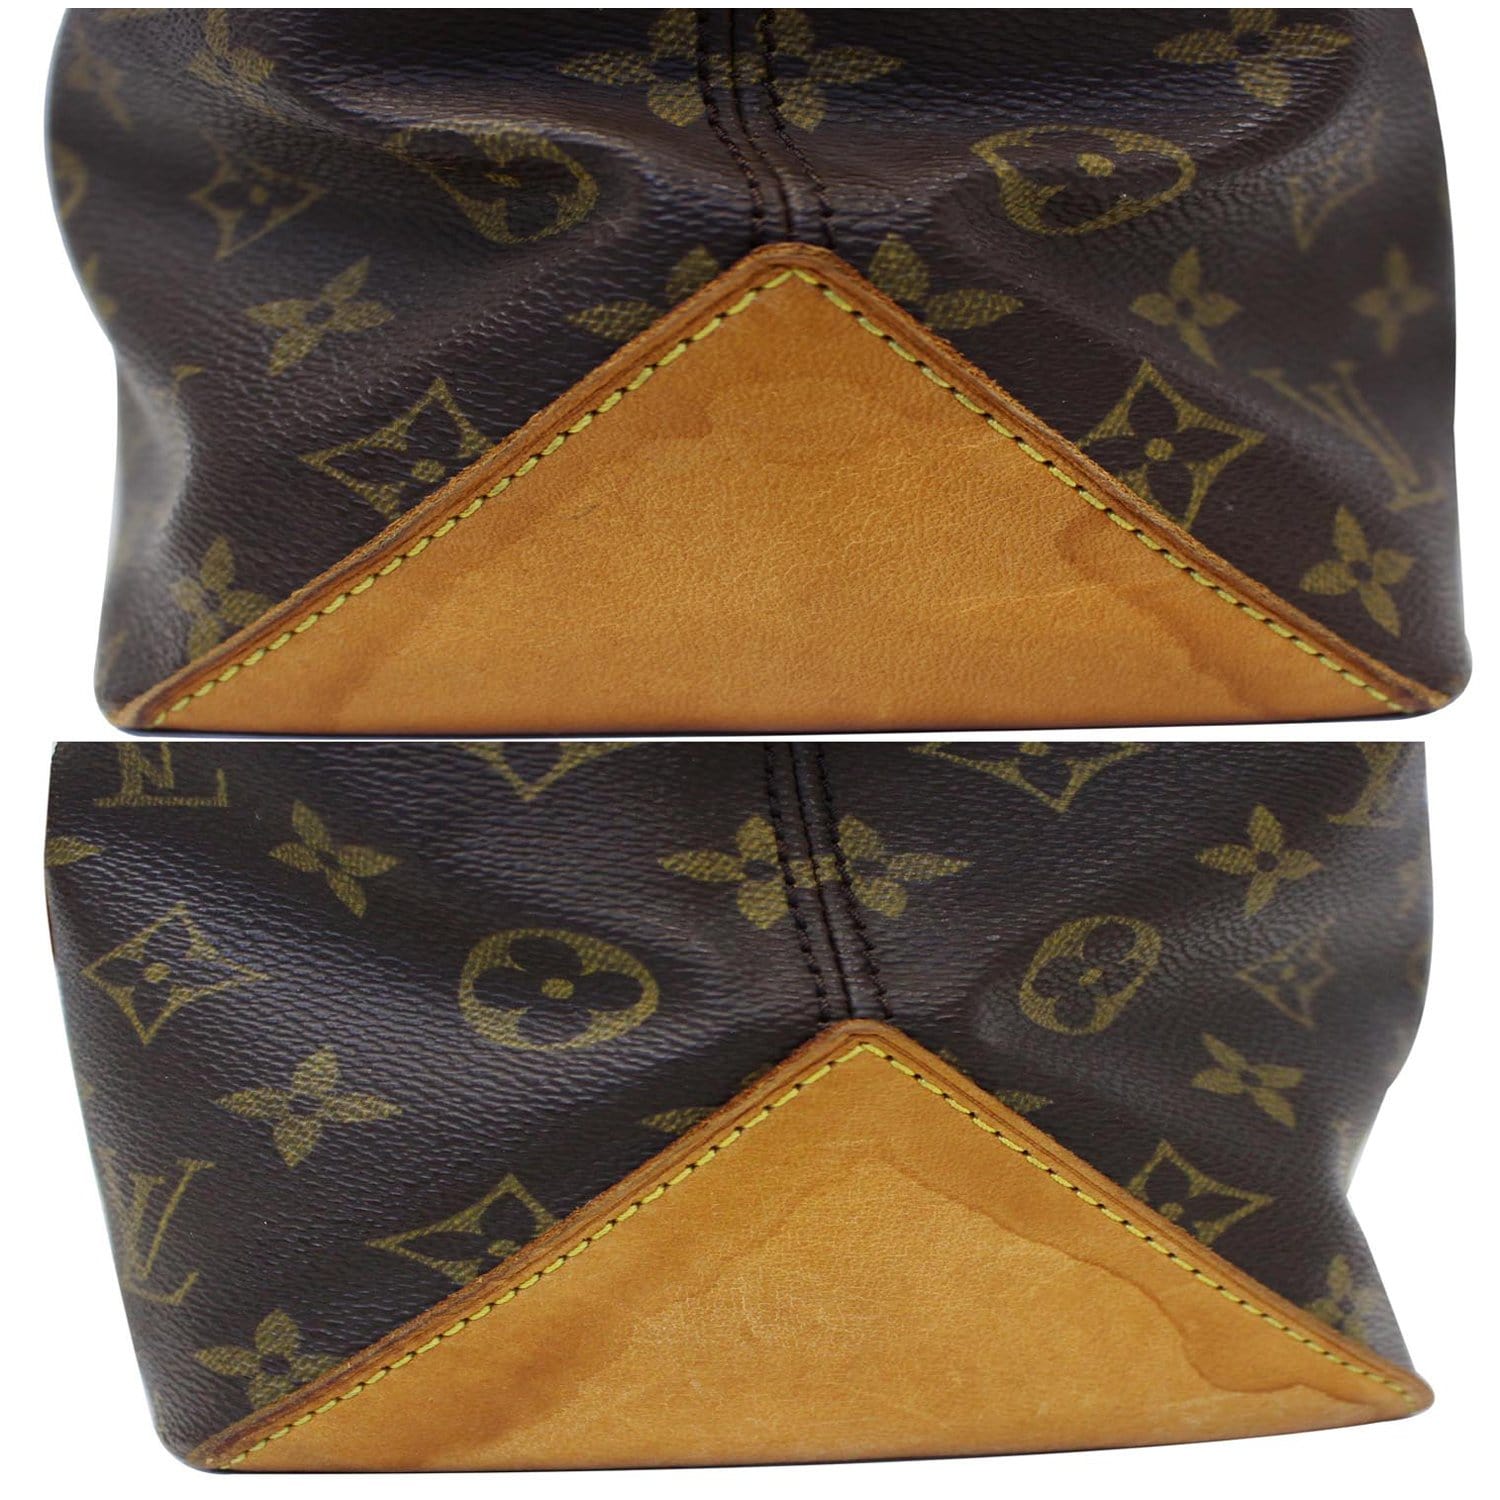 Piano cloth handbag Louis Vuitton Brown in Cloth - 26077604